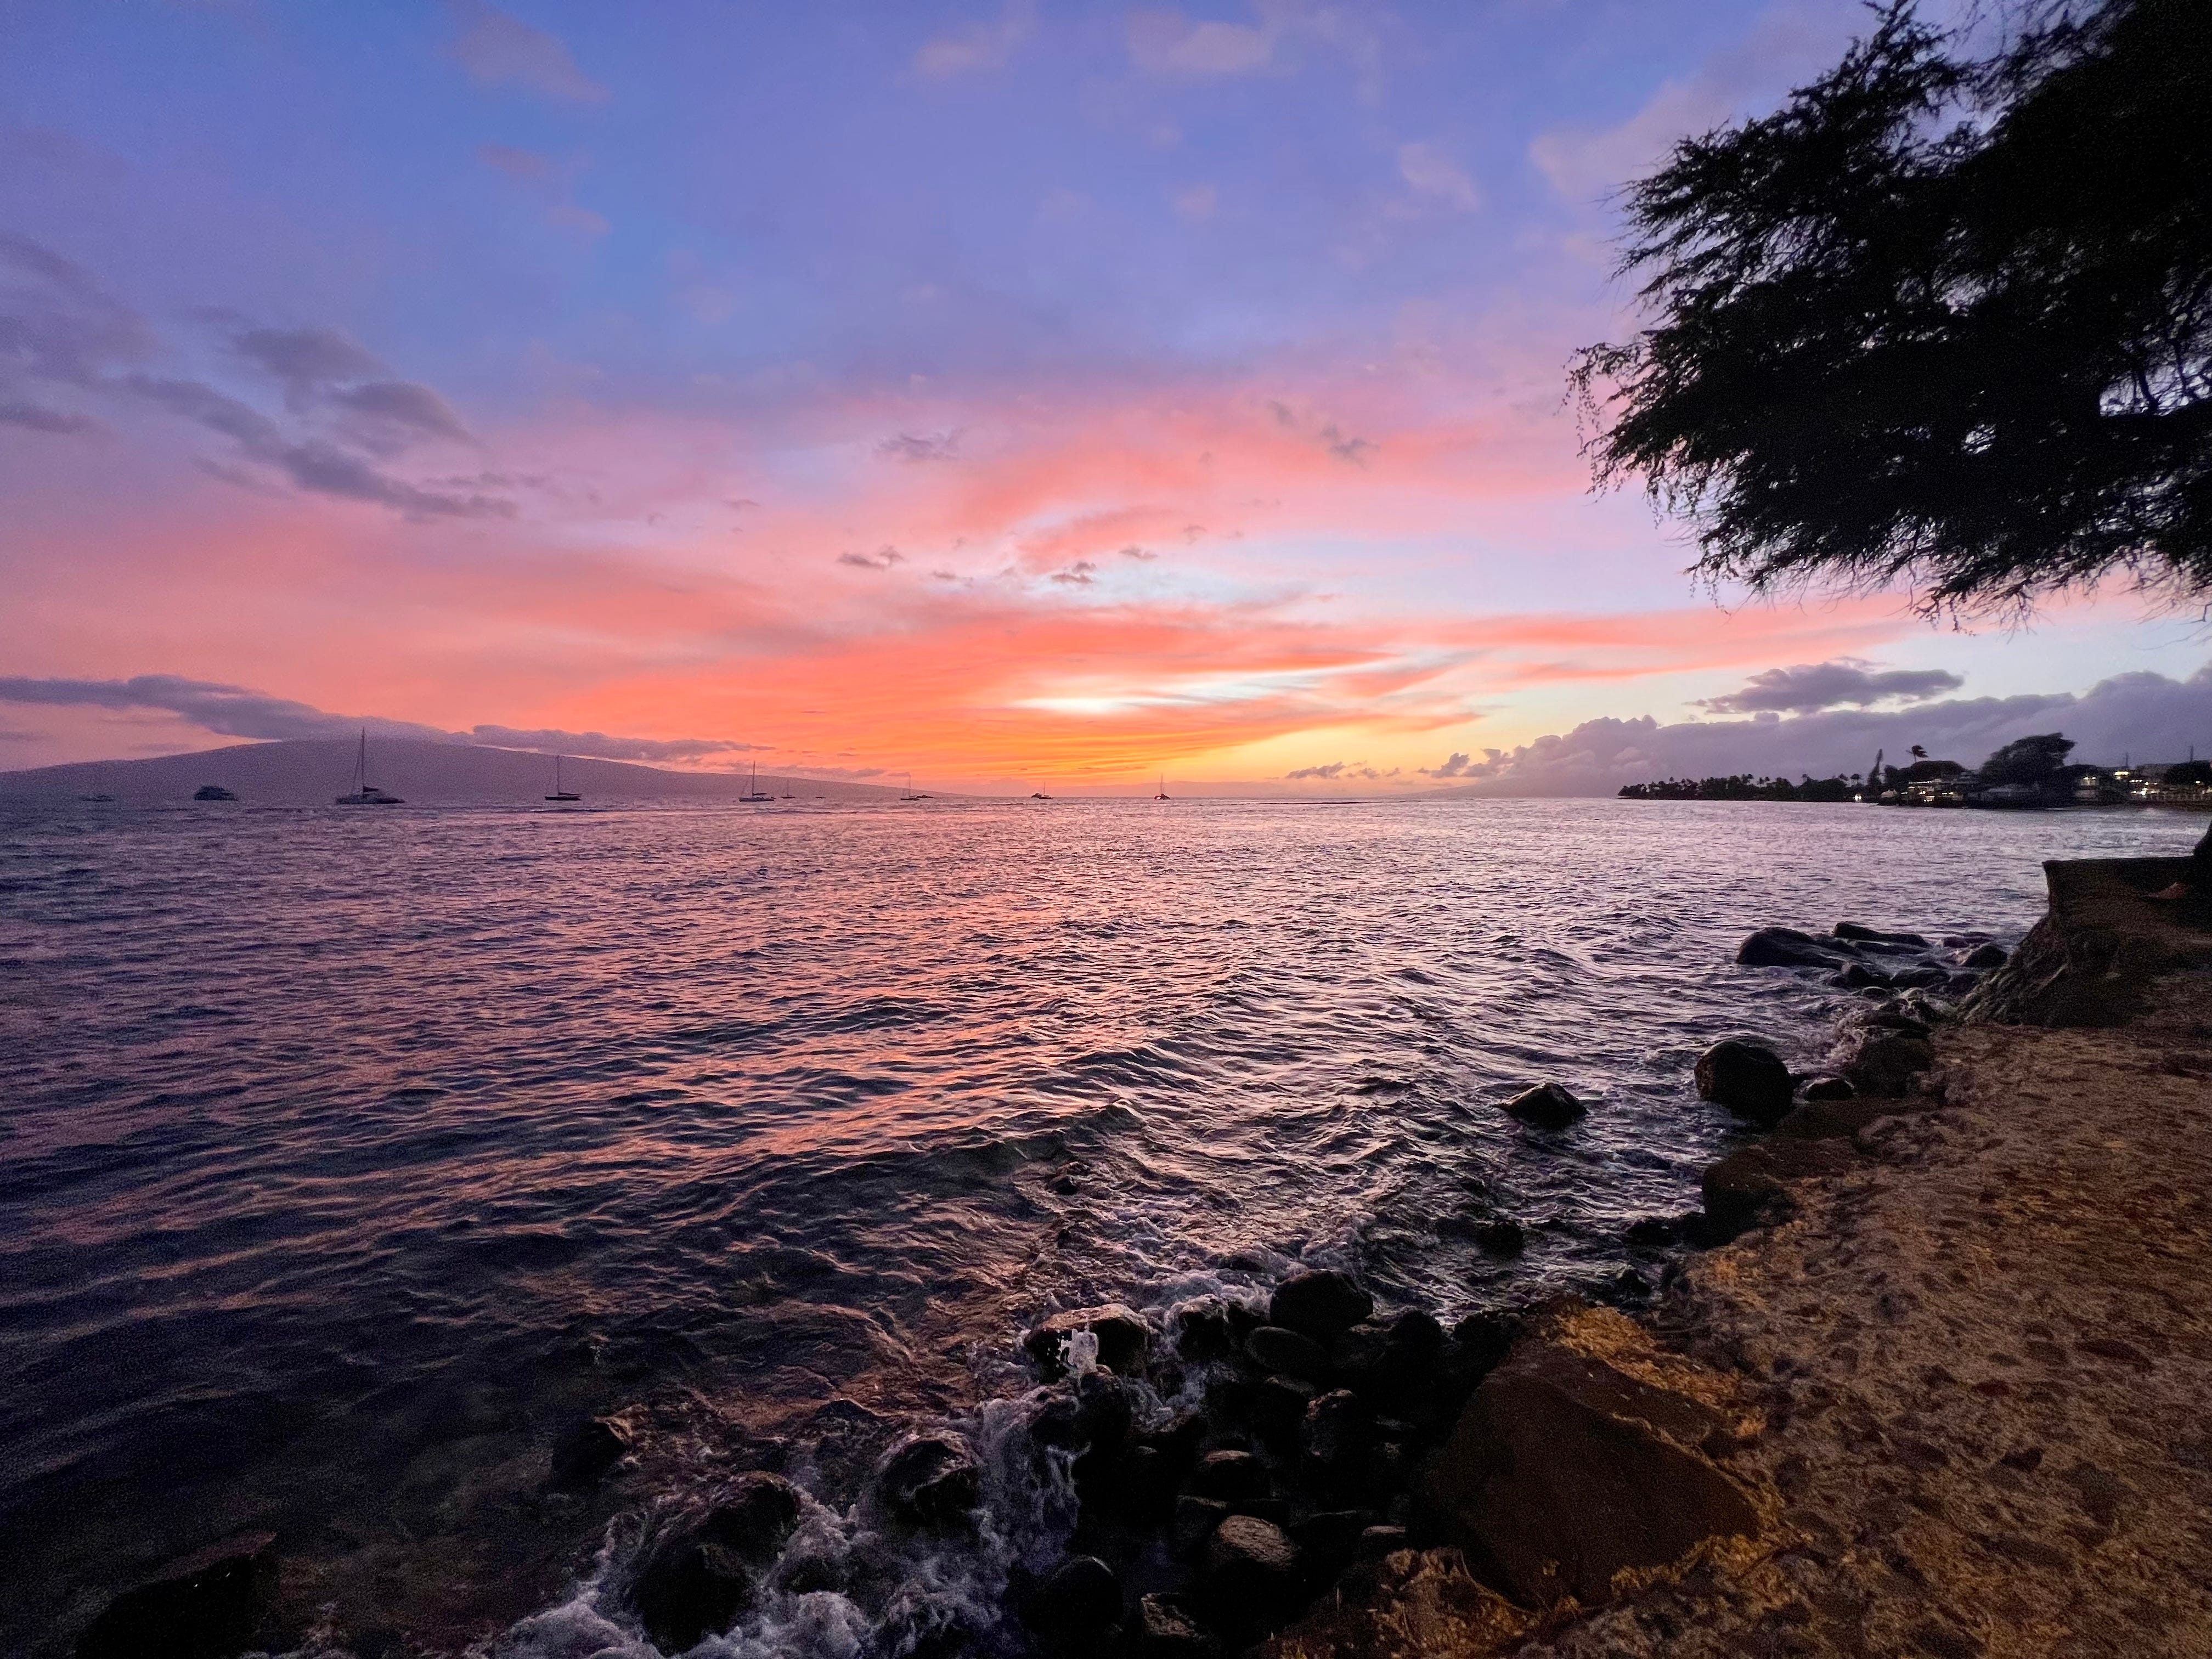 Sonnenuntergang in Hawaii am Strand, Orange-, Gelb- und Blautöne in der Ferne